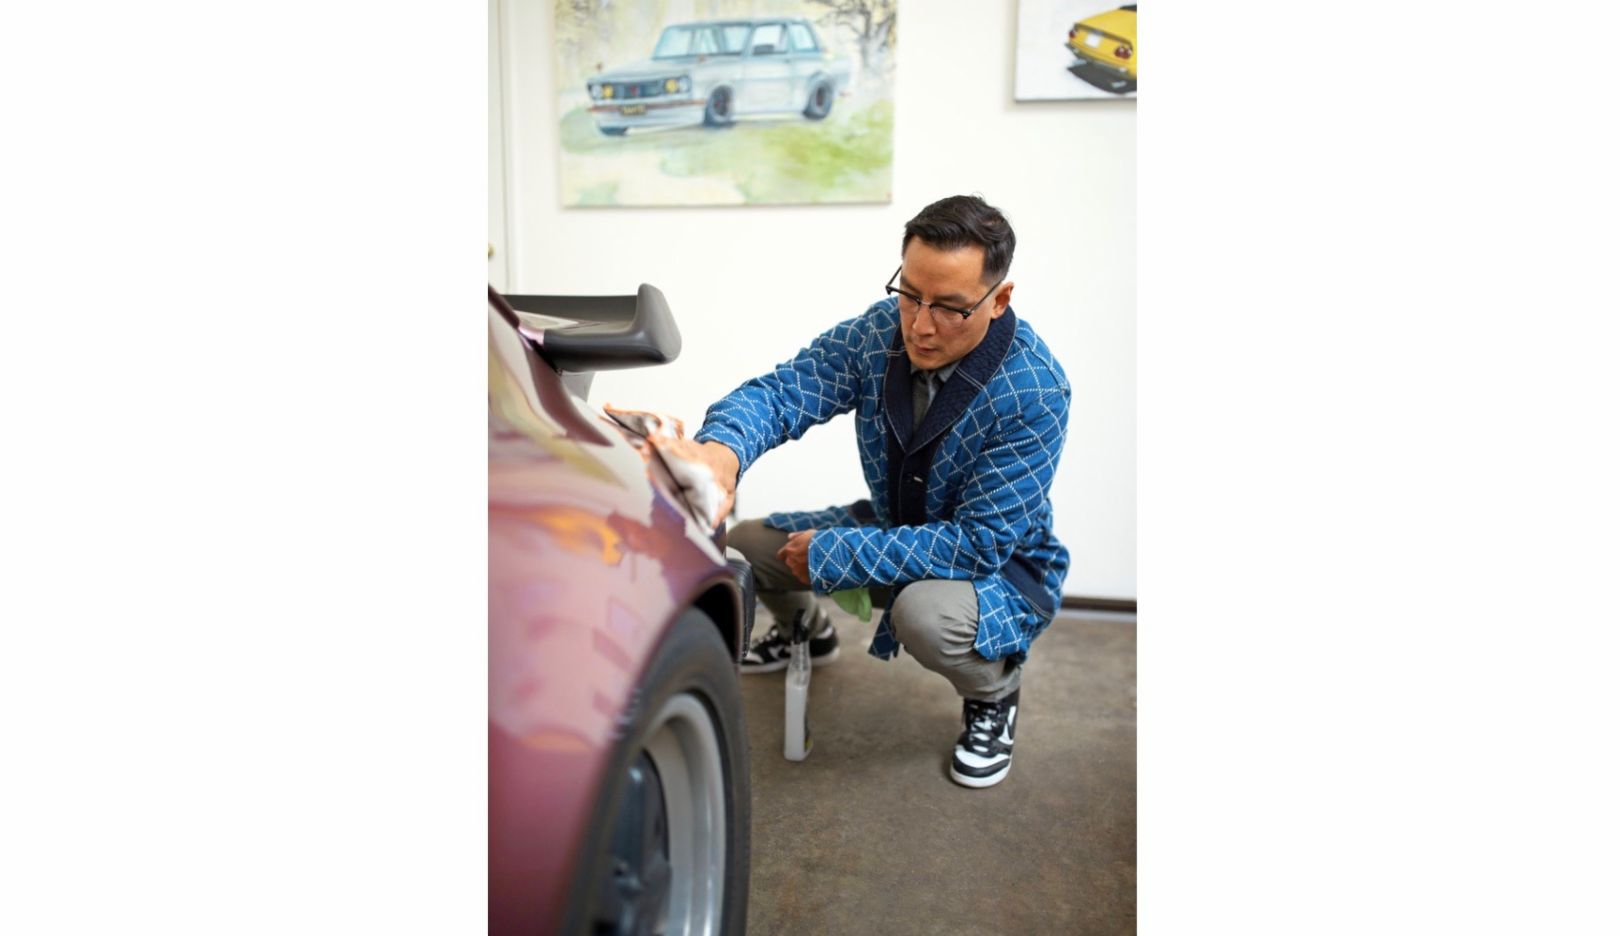 Hace diez años, Daniel Wu heredó de su padre el Porsche 911 del año 1988 y lo guarda desde entonces como oro en paño. Son muchos los recuerdos comunes que vinculan a padre e hijo a través del coche deportivo.